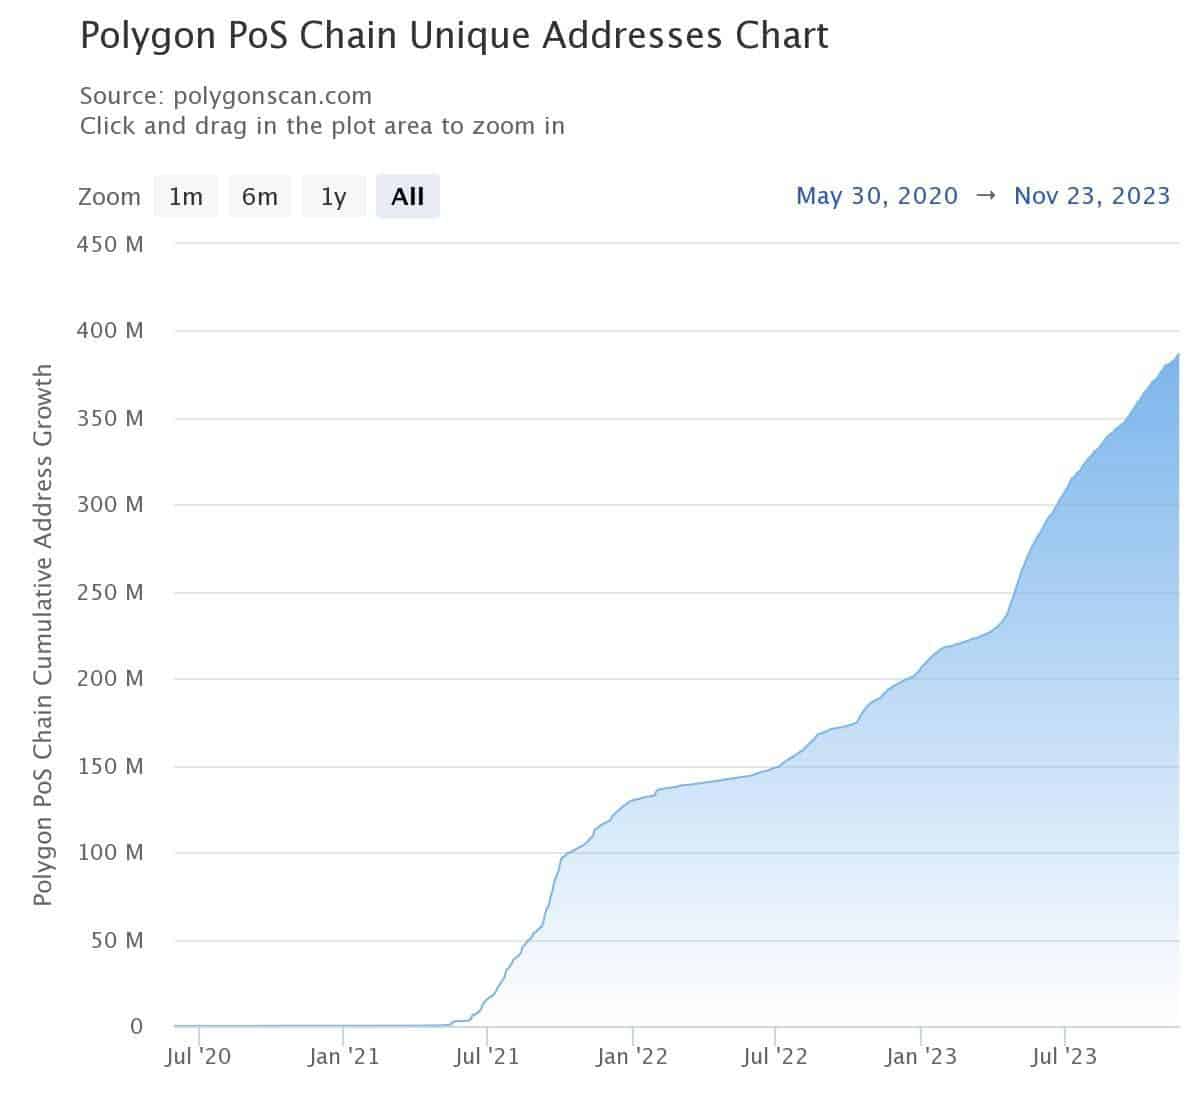 Как количество активных адресов Polygon выросло со 120 тыс. до 385 млн за 3 года